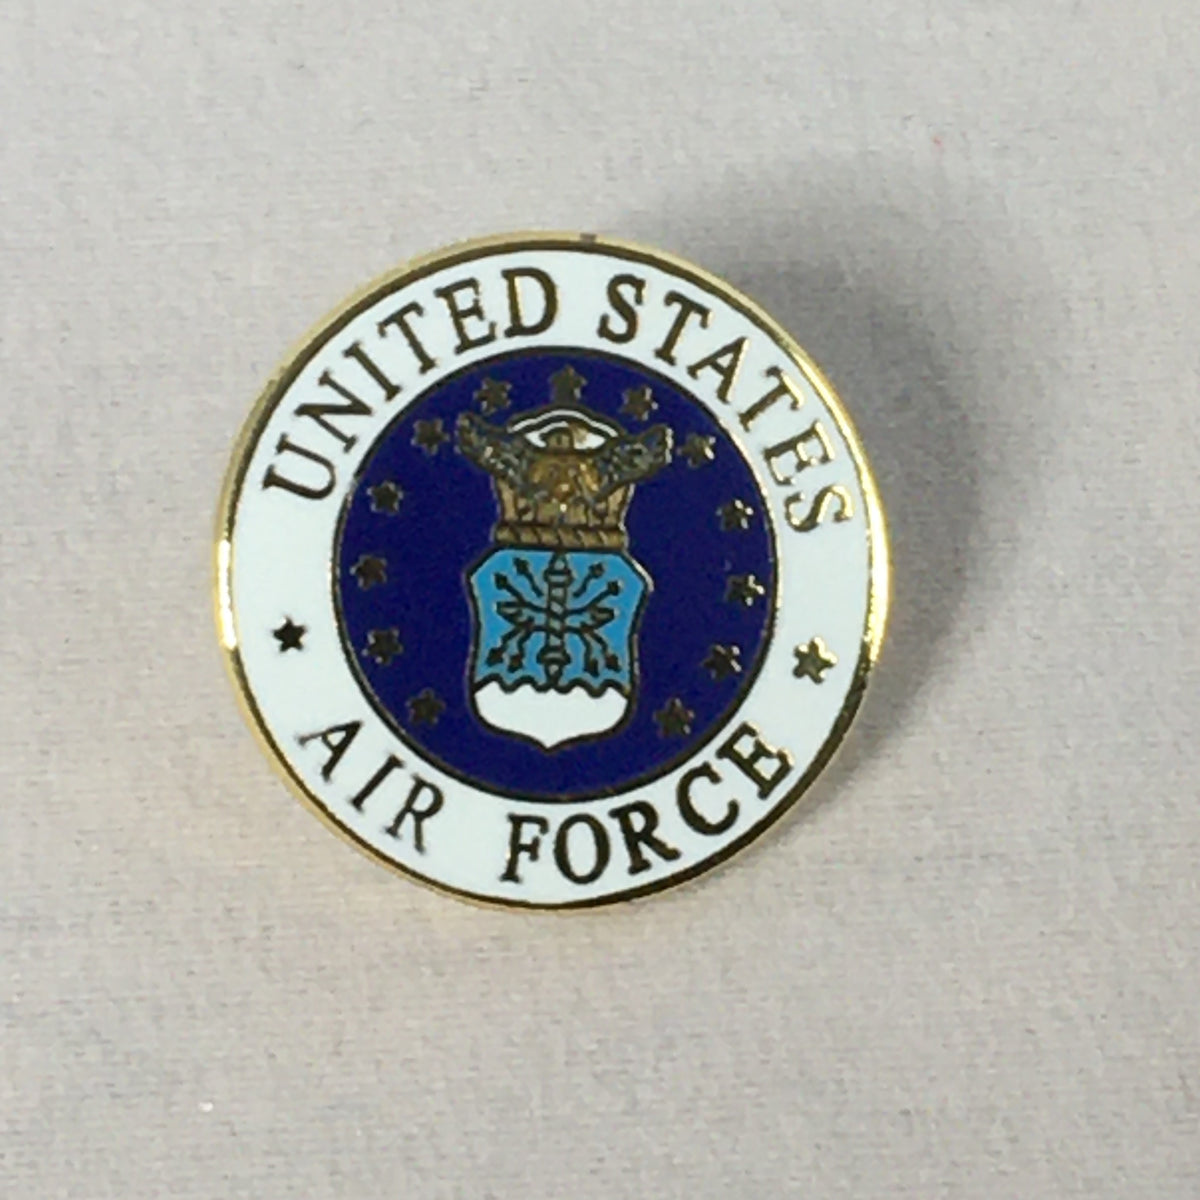 US Air Force Pin